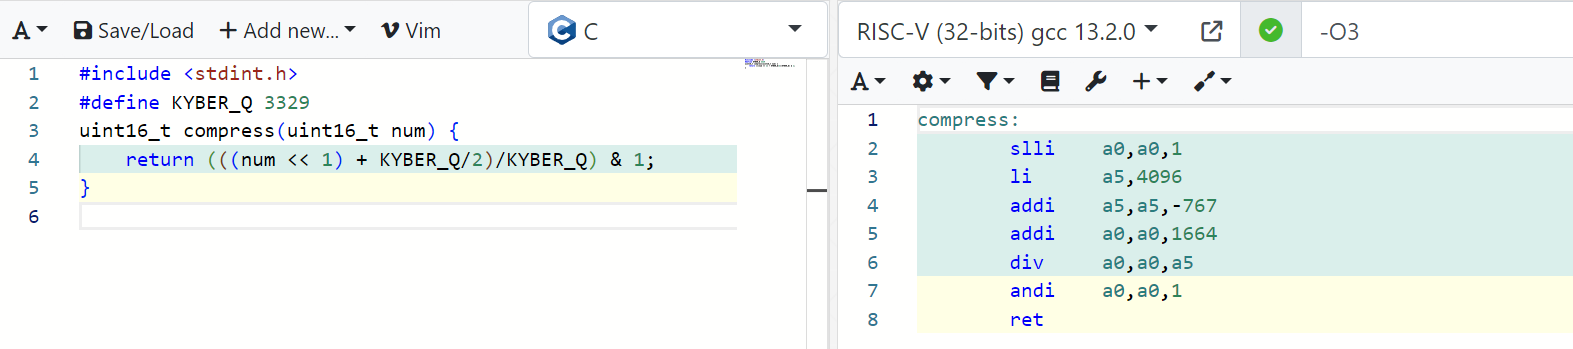 Compilation result: RISC-V (32-bit) gcc 13.2.0